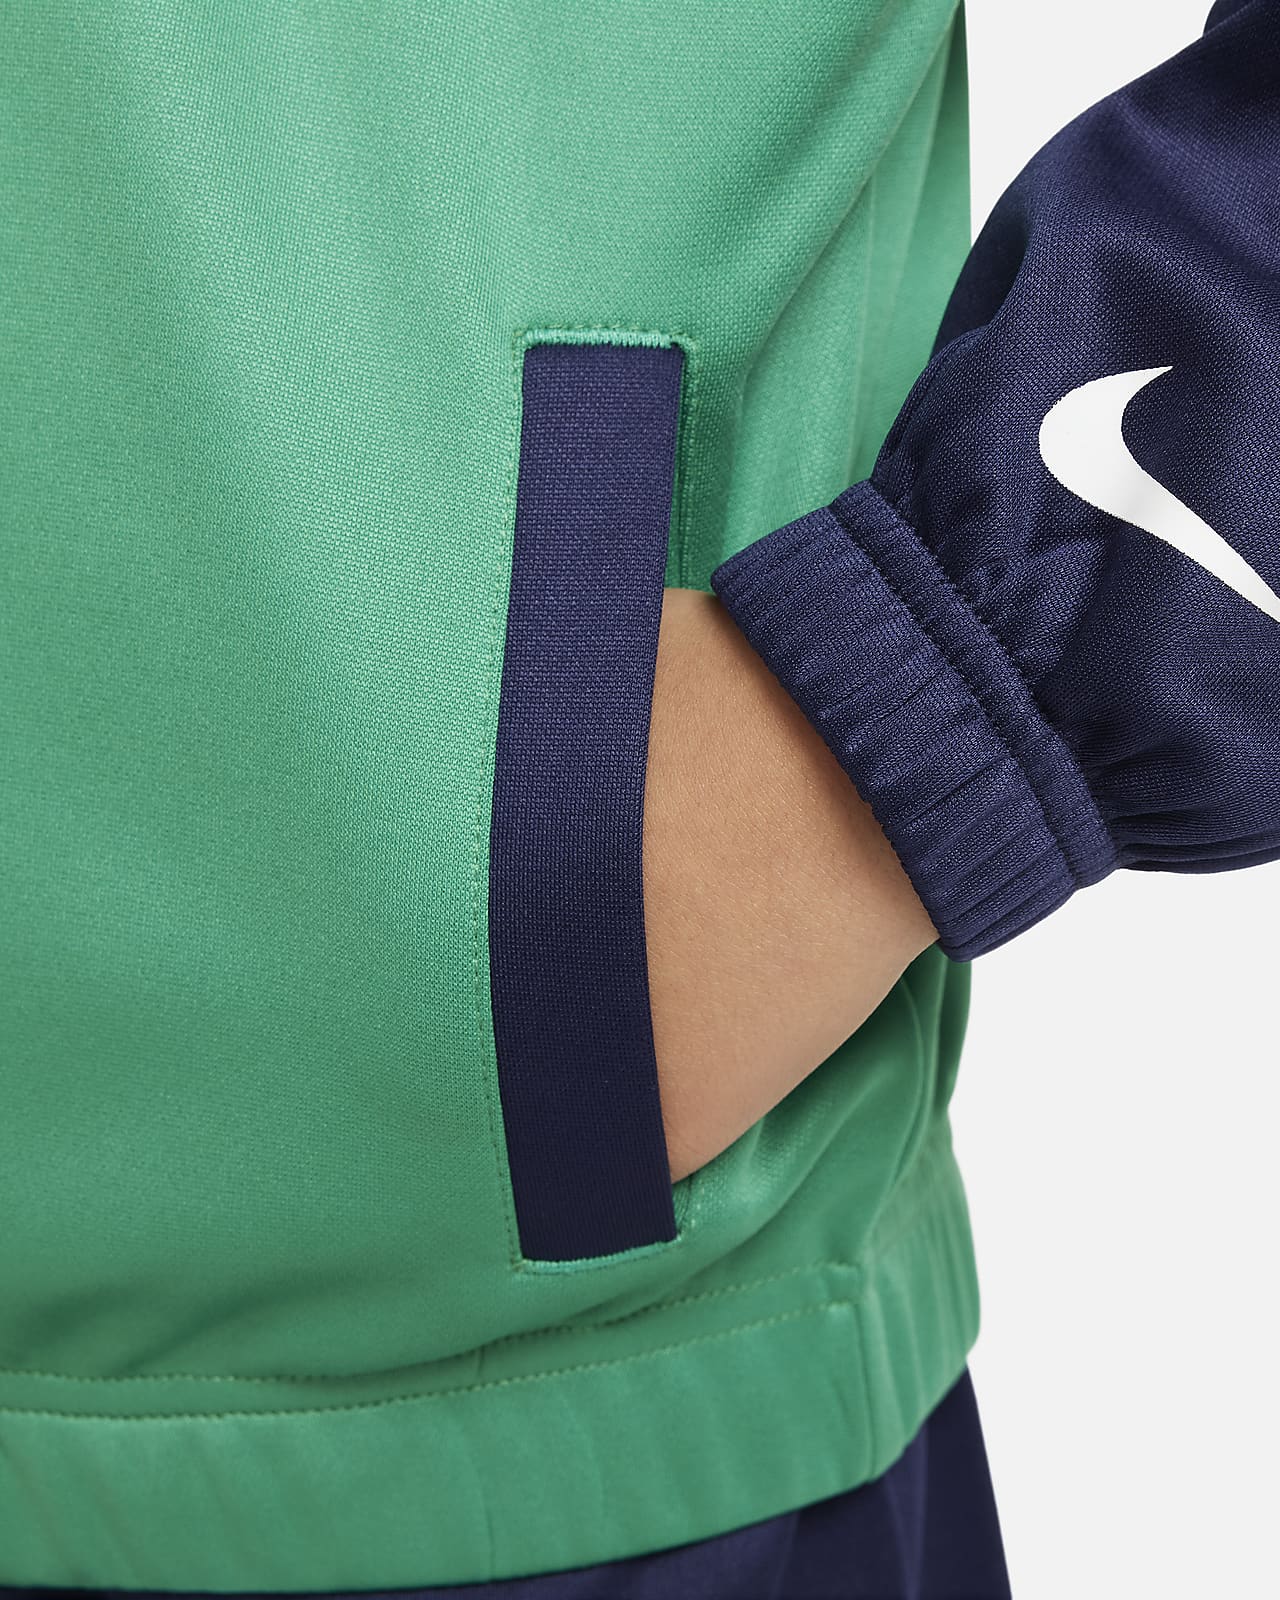 Nike Sportswear Next Gen Little Kids' Dri-FIT Tricot Set.